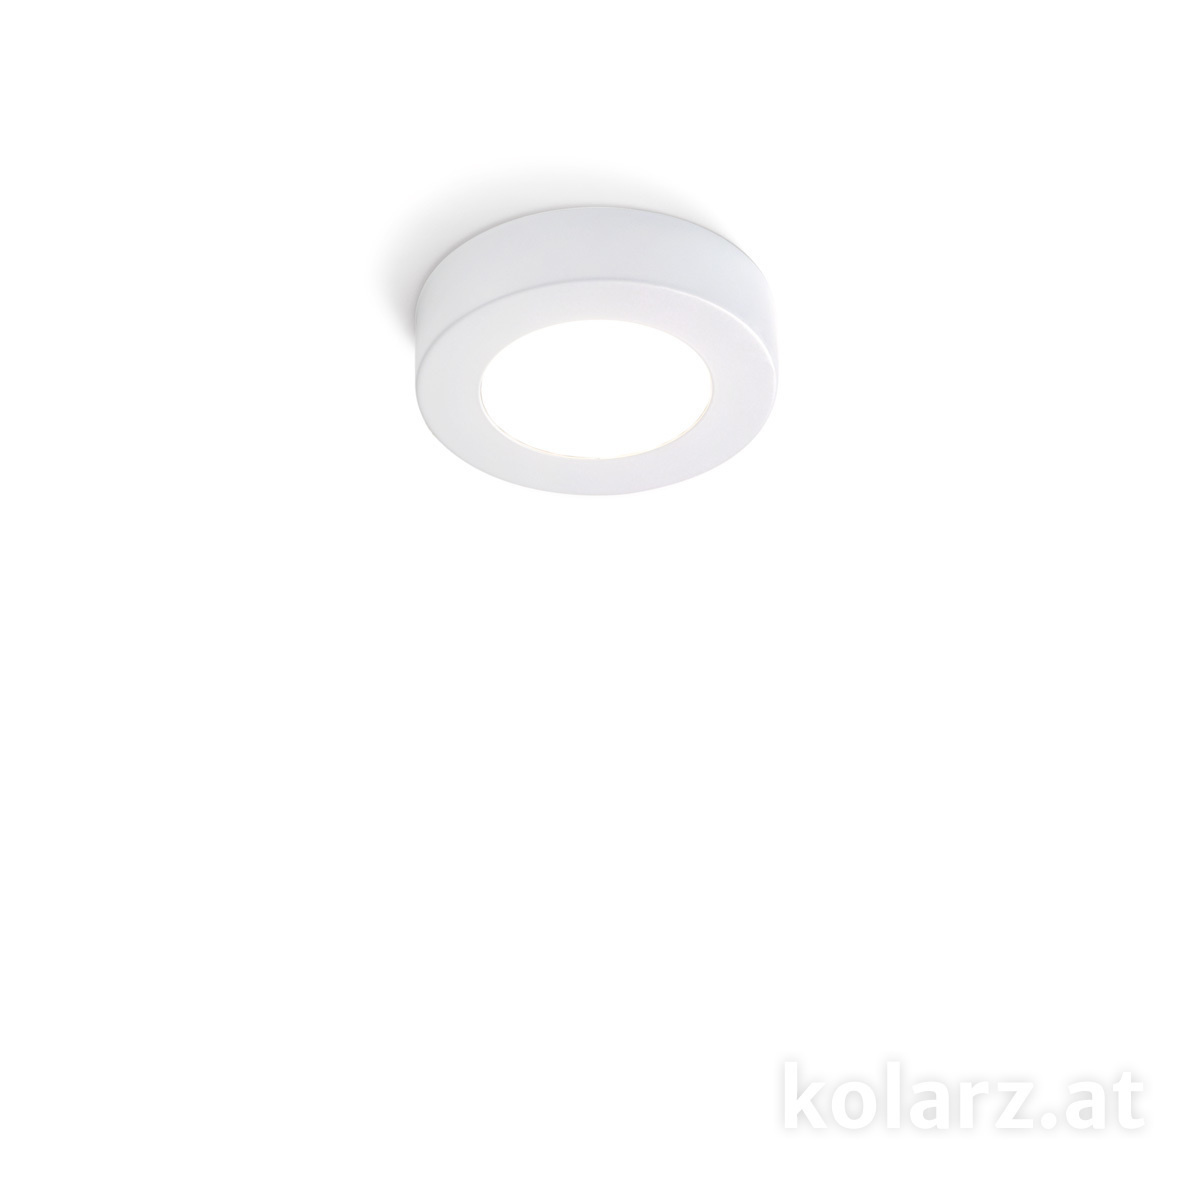 KOLARZ Leuchten Sonderangebote - Sale bei Deckenleuchten & Deckenlampen von KOLARZ Leuchten Spot CLICK, Weiß, Ø12 Weiß, Ø12cm, Höhe 3cm, 1-flammig, GX53 A1344.10R.W